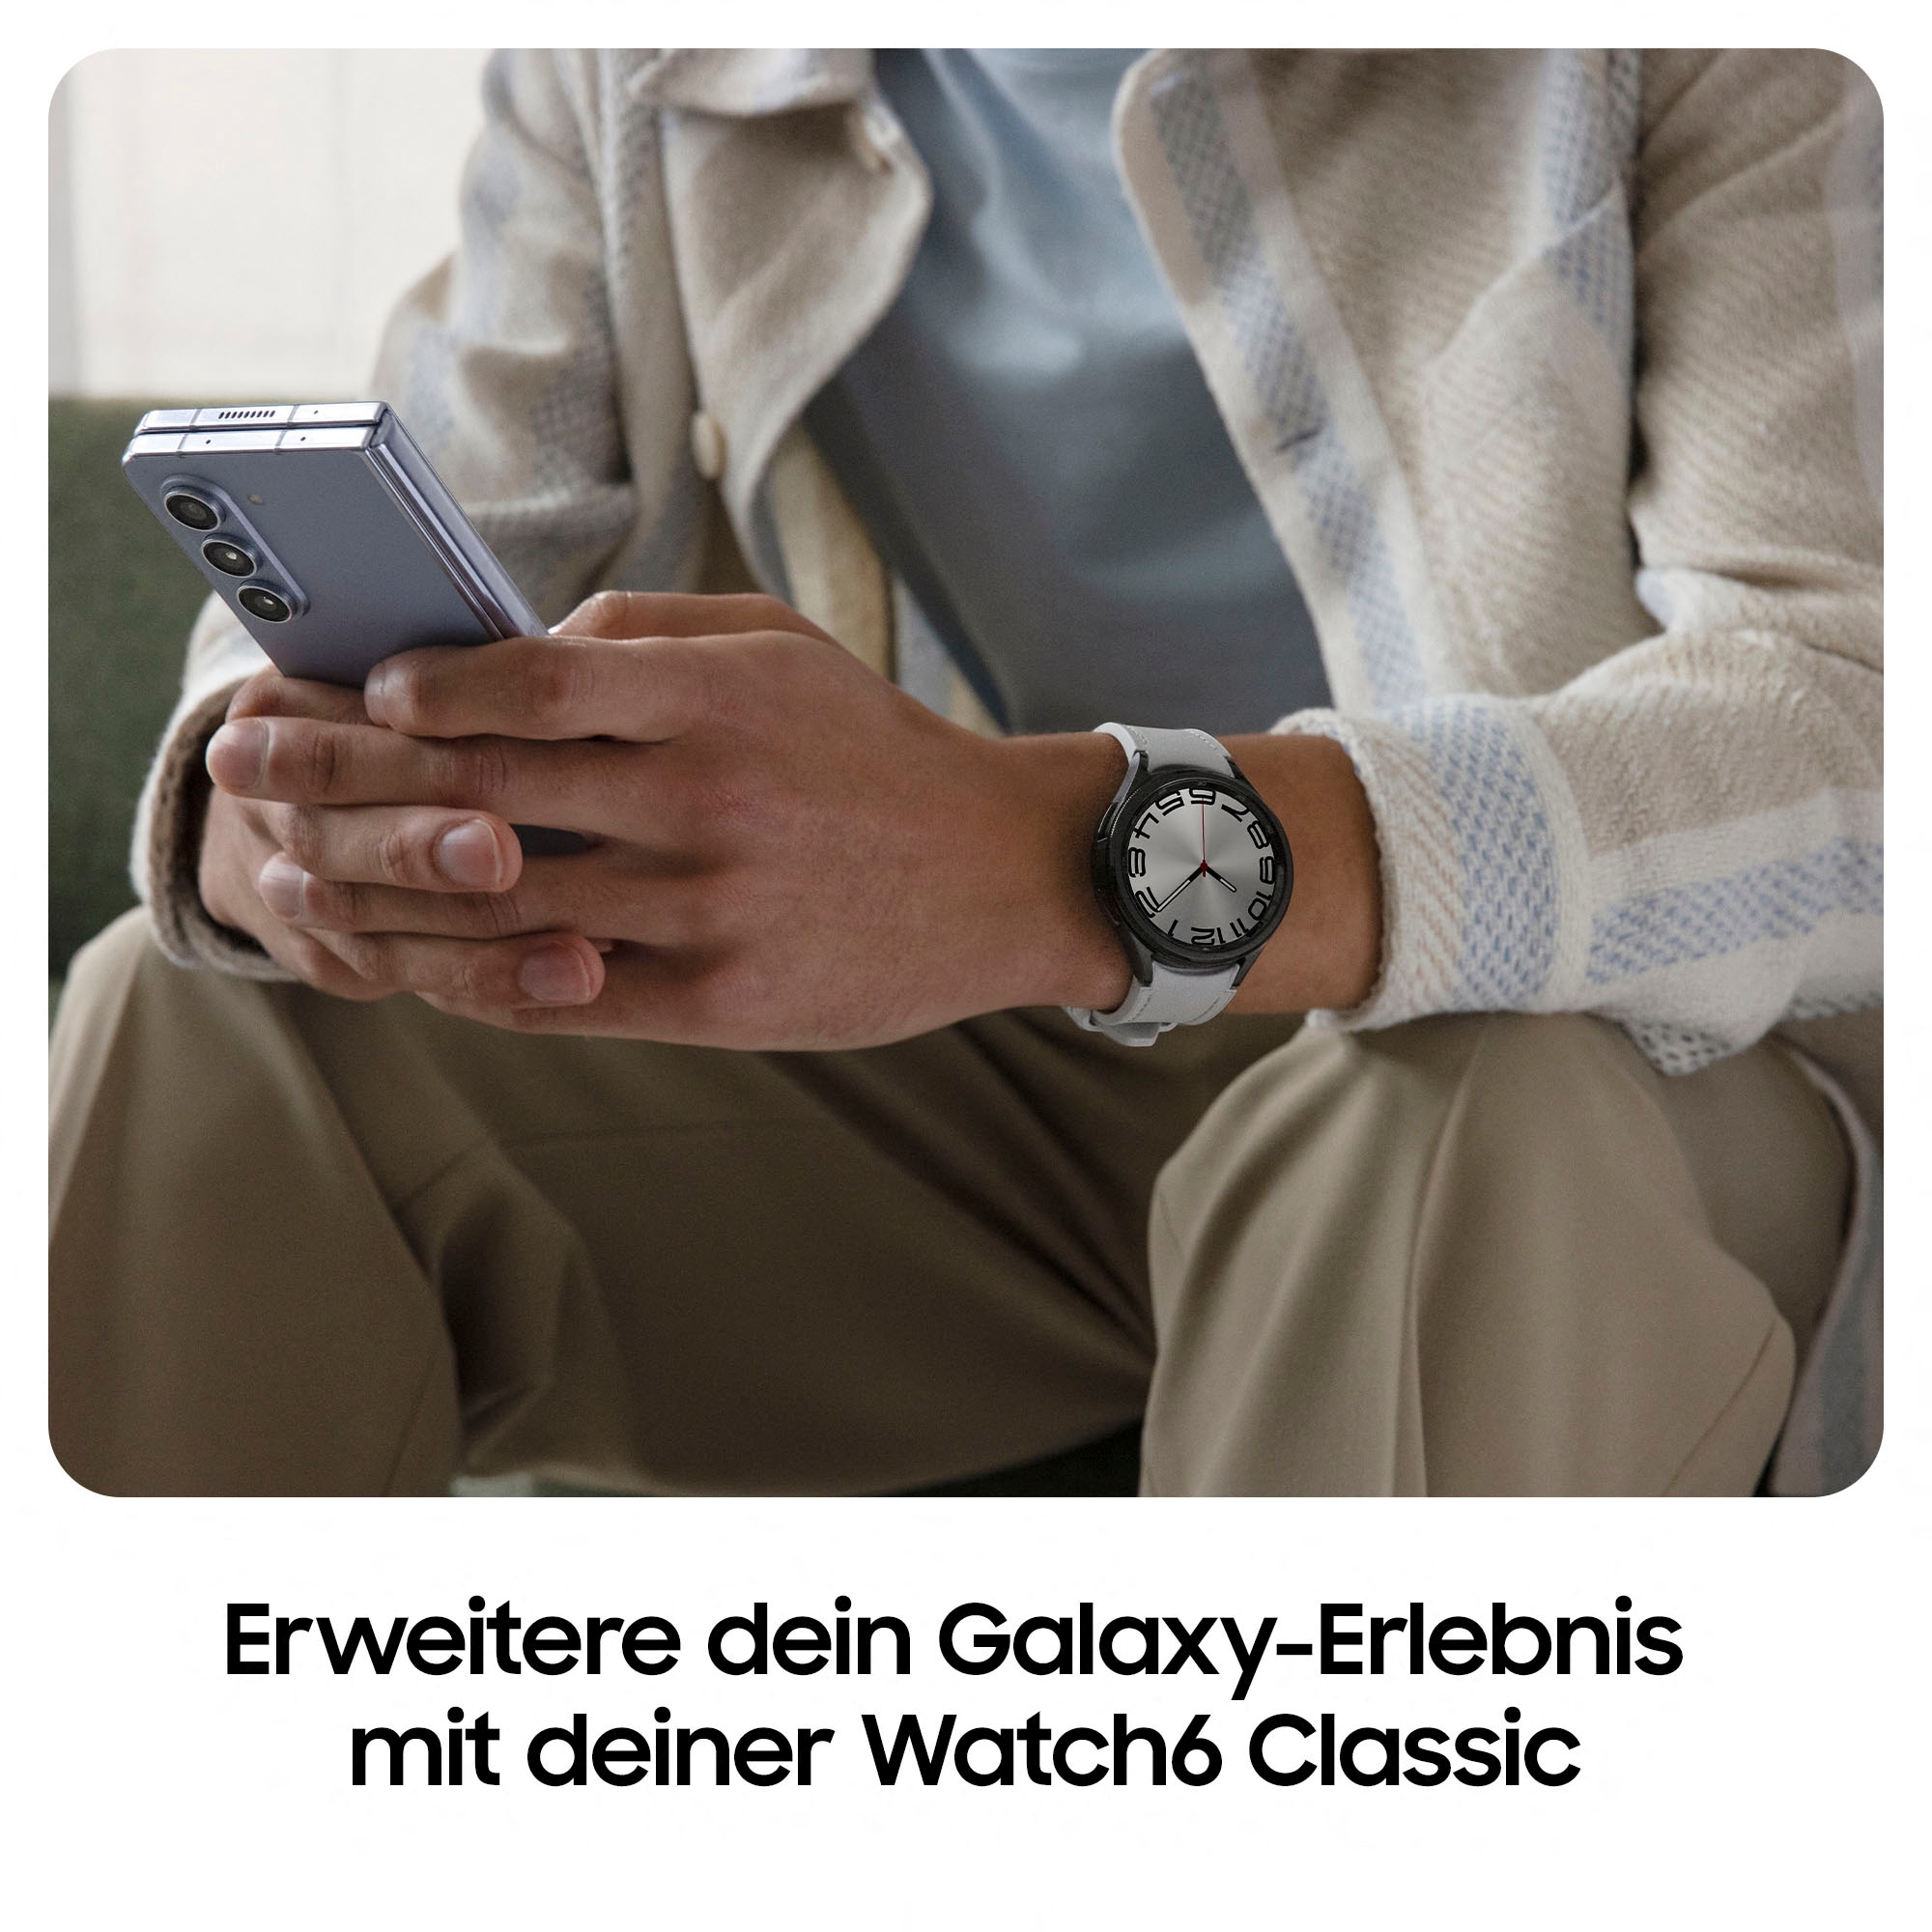 6 by Samsung) Samsung Watch (Wear Classic BAUR | Smartwatch 43mm«, »Galaxy OS